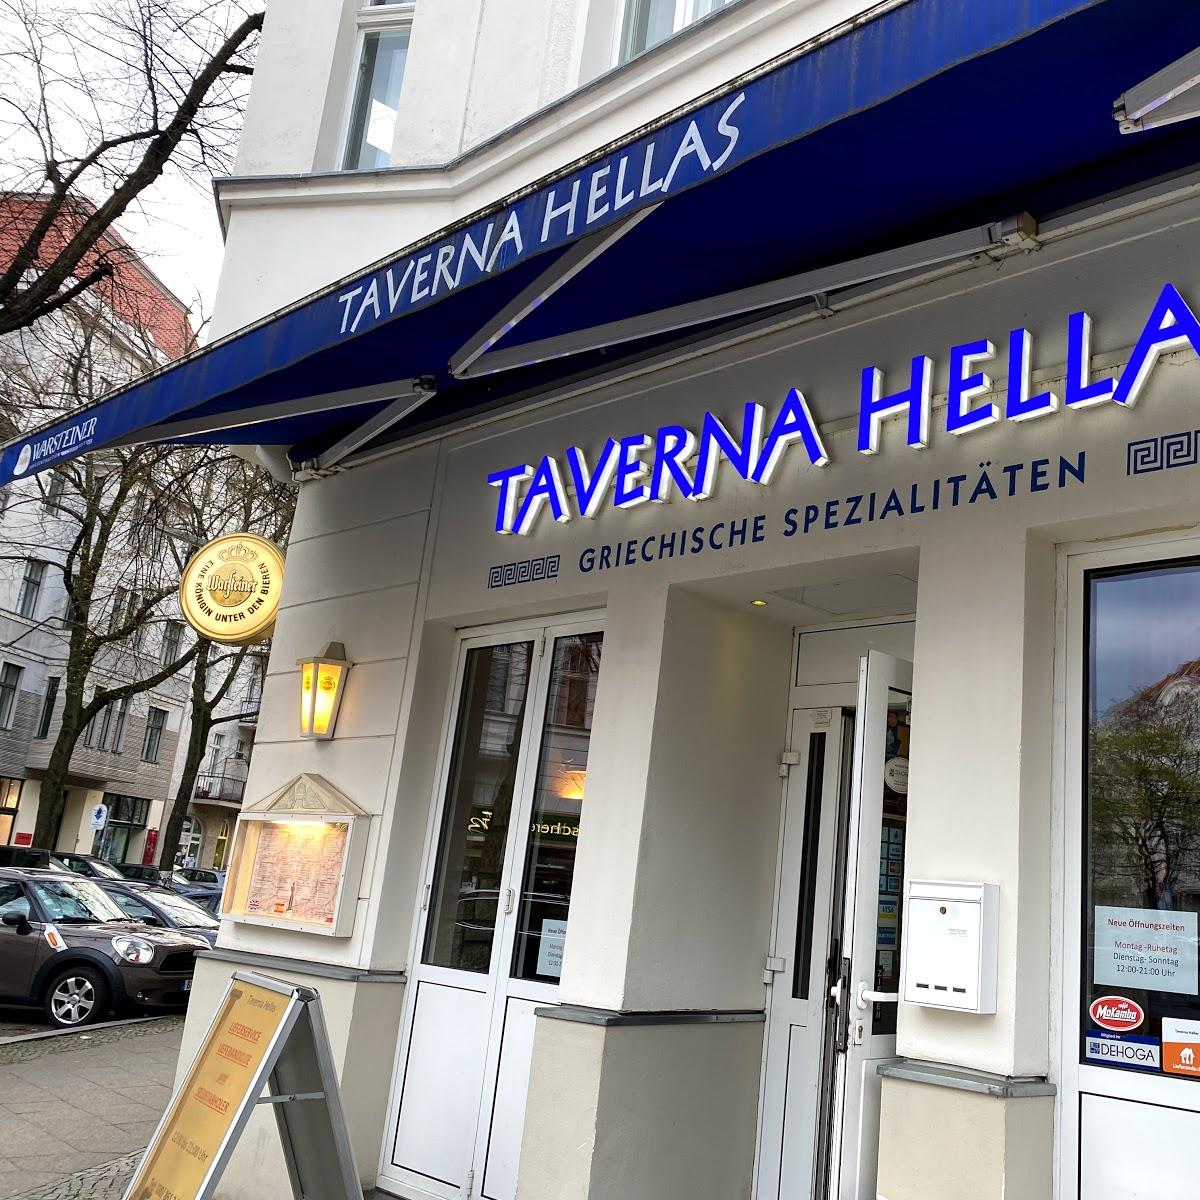 Restaurant "Taverna Hellas" in Berlin